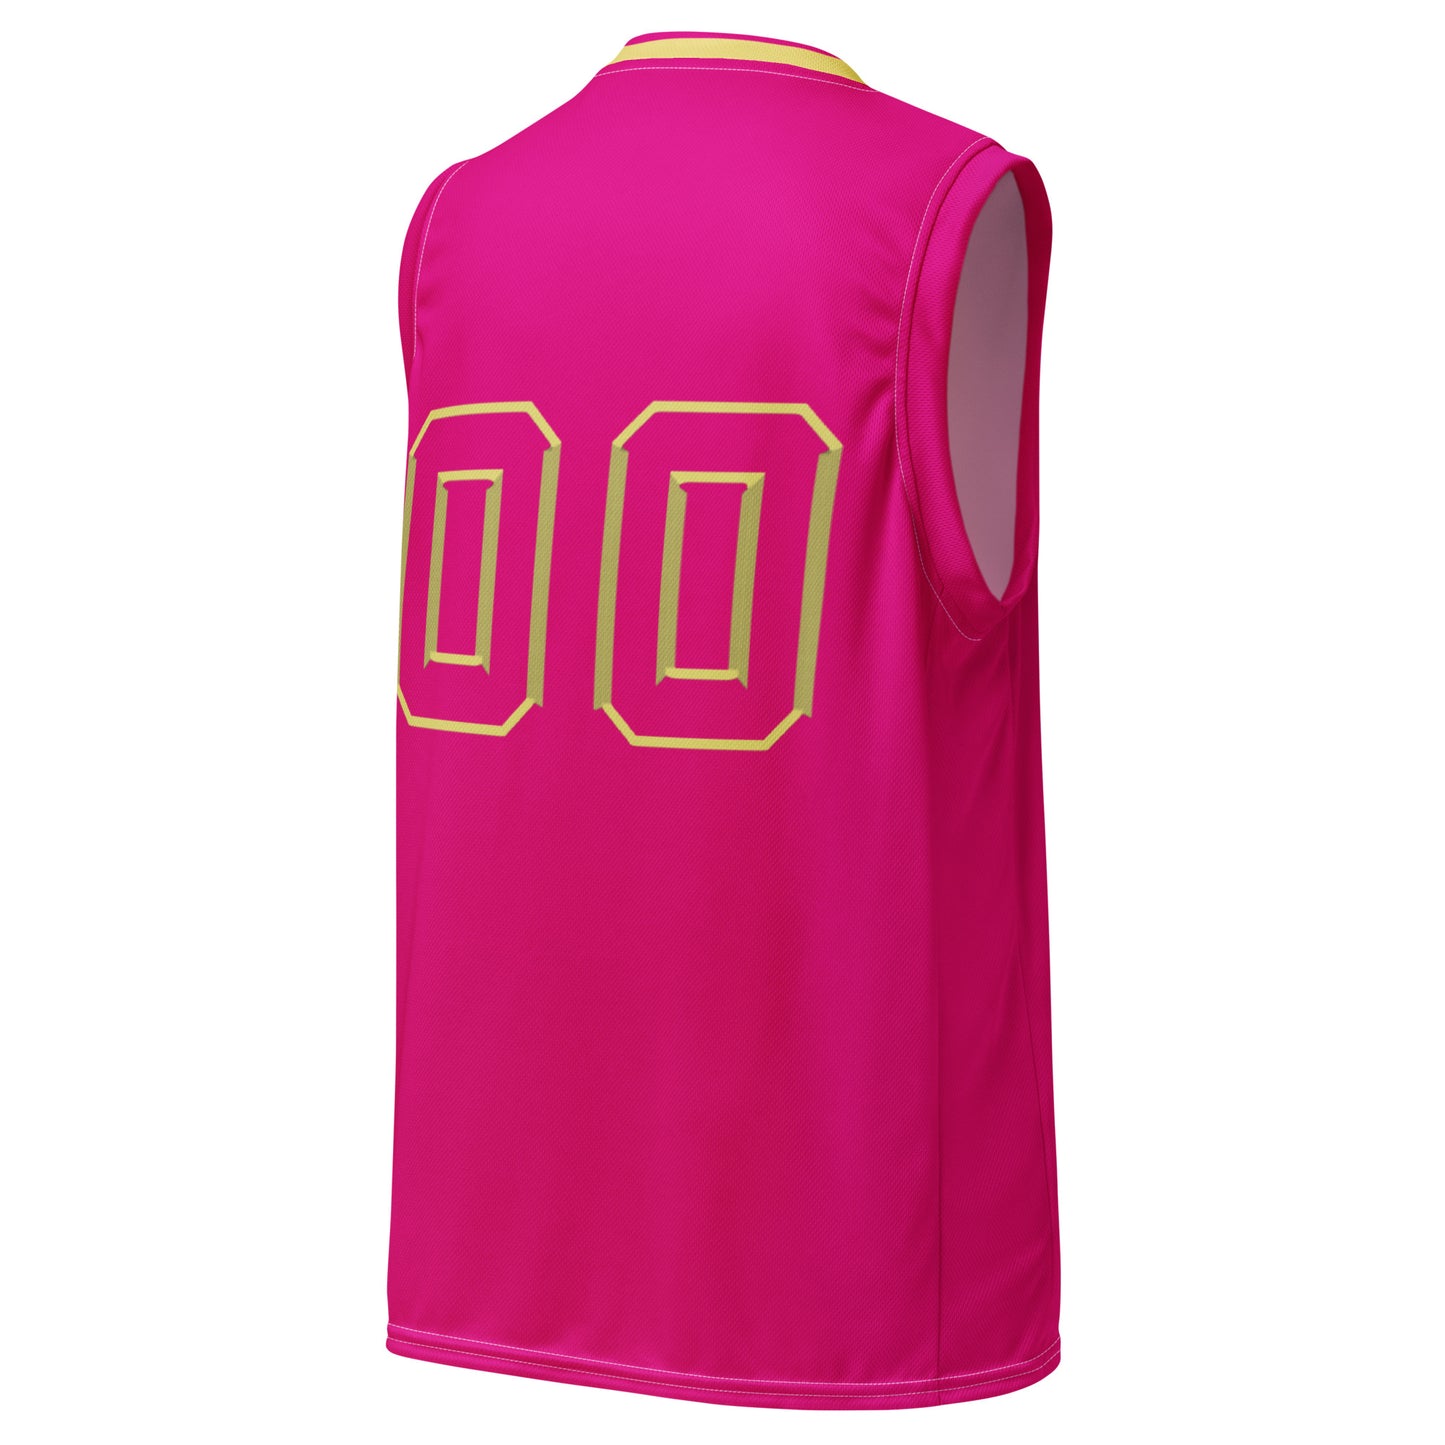 Snooty Fox Art Unisex Basketball Jersey - Summertime Pink